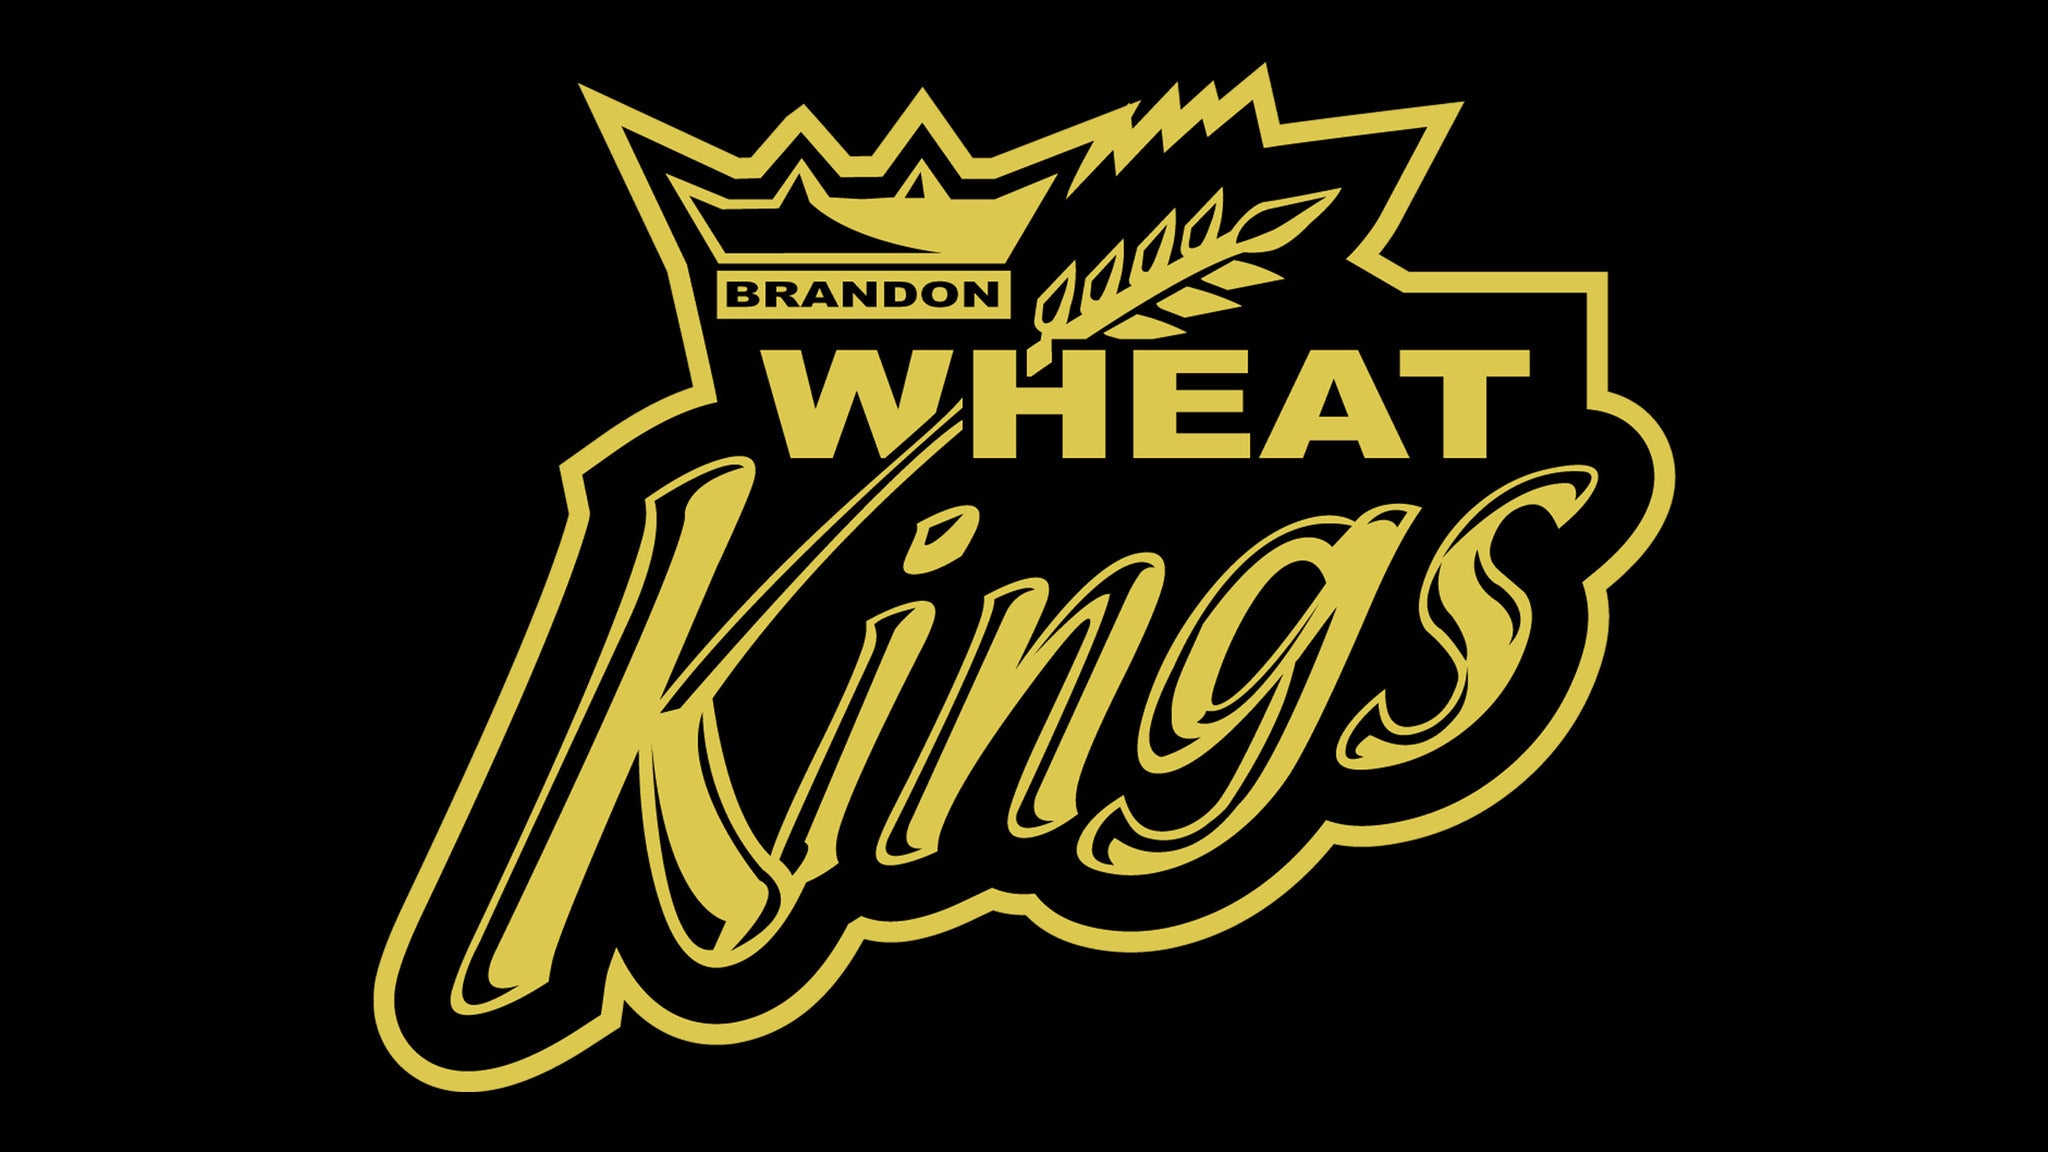 Brandon Wheat Kings vs. Winnipeg Ice in Brandon promo photo for Black Friday CHILD  presale offer code